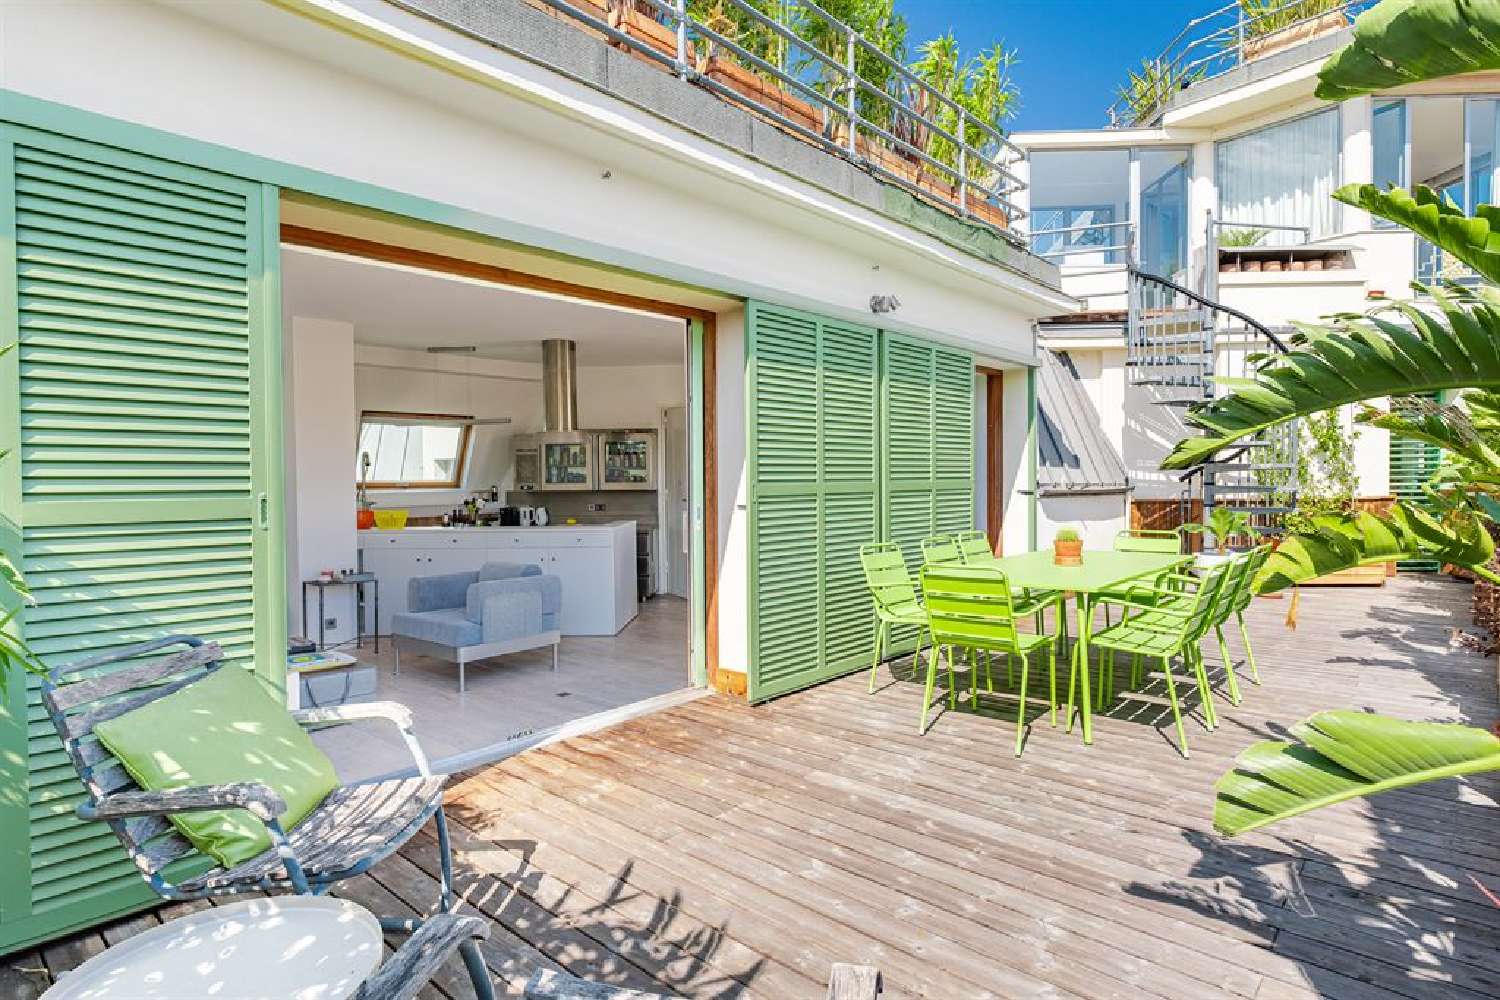  à vendre maison Nice Alpes-Maritimes 1